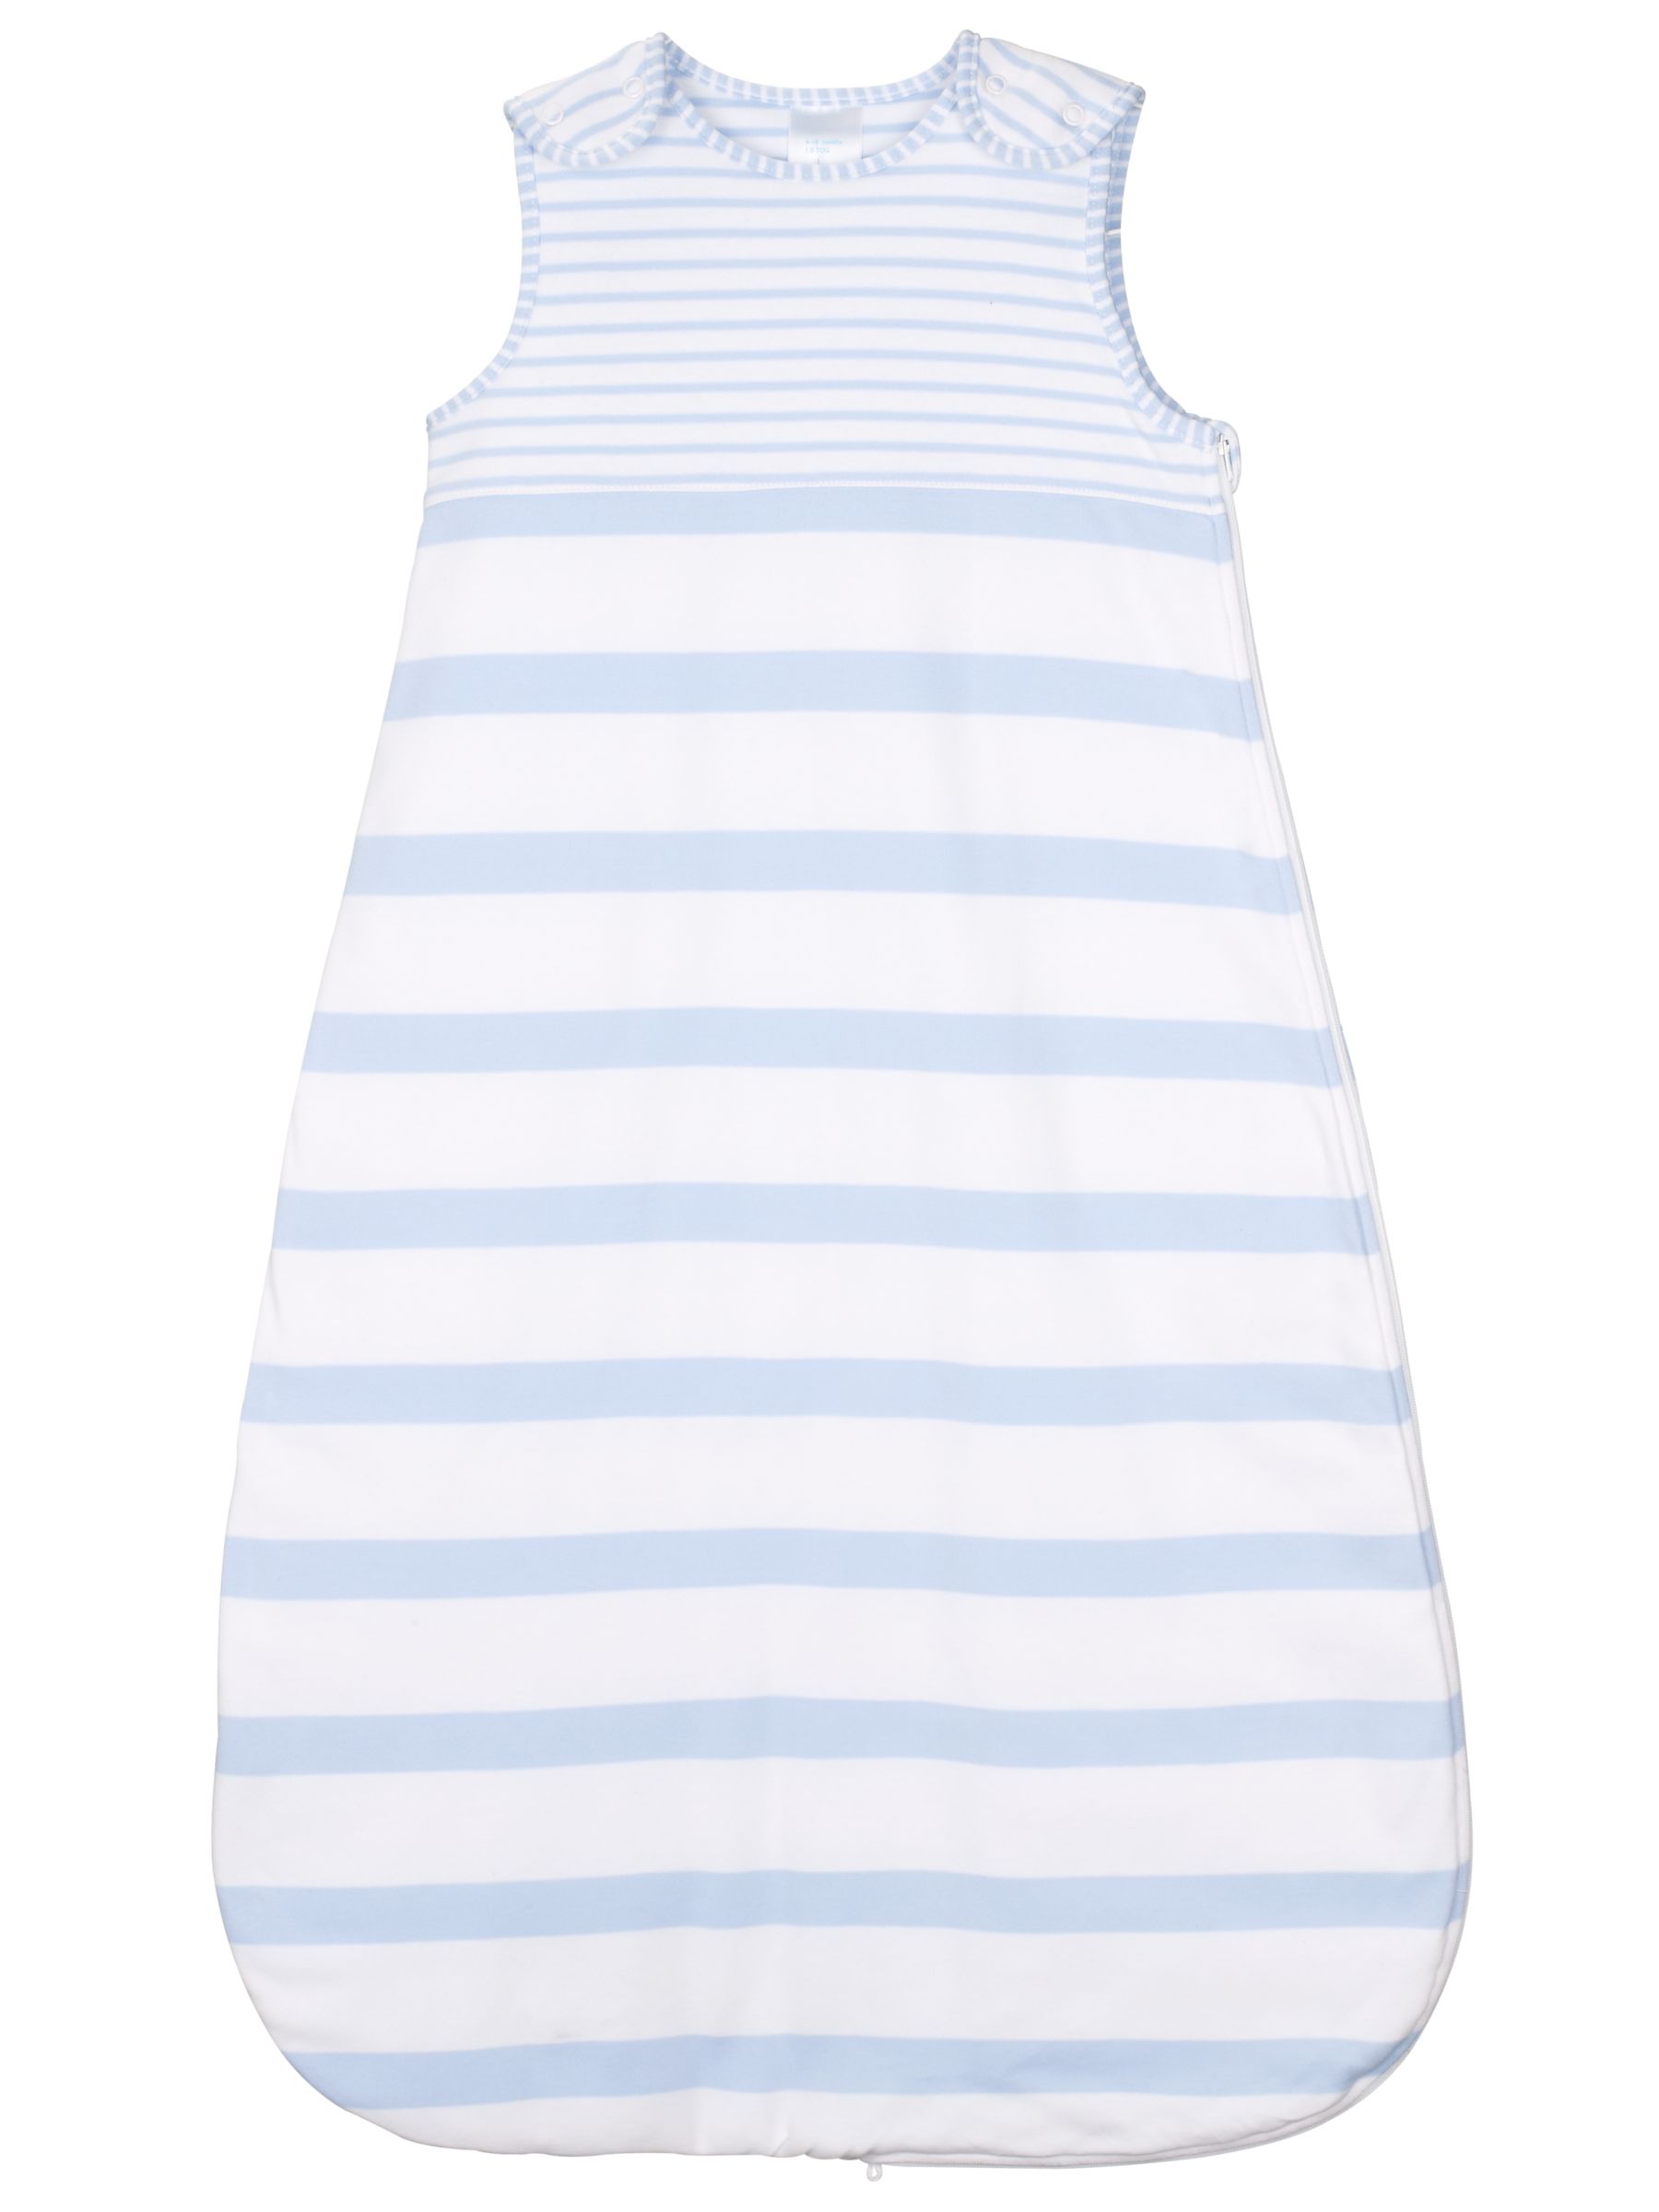 John Lewis Baby Stripe Sleeping Bag, 1 Tog, Blue